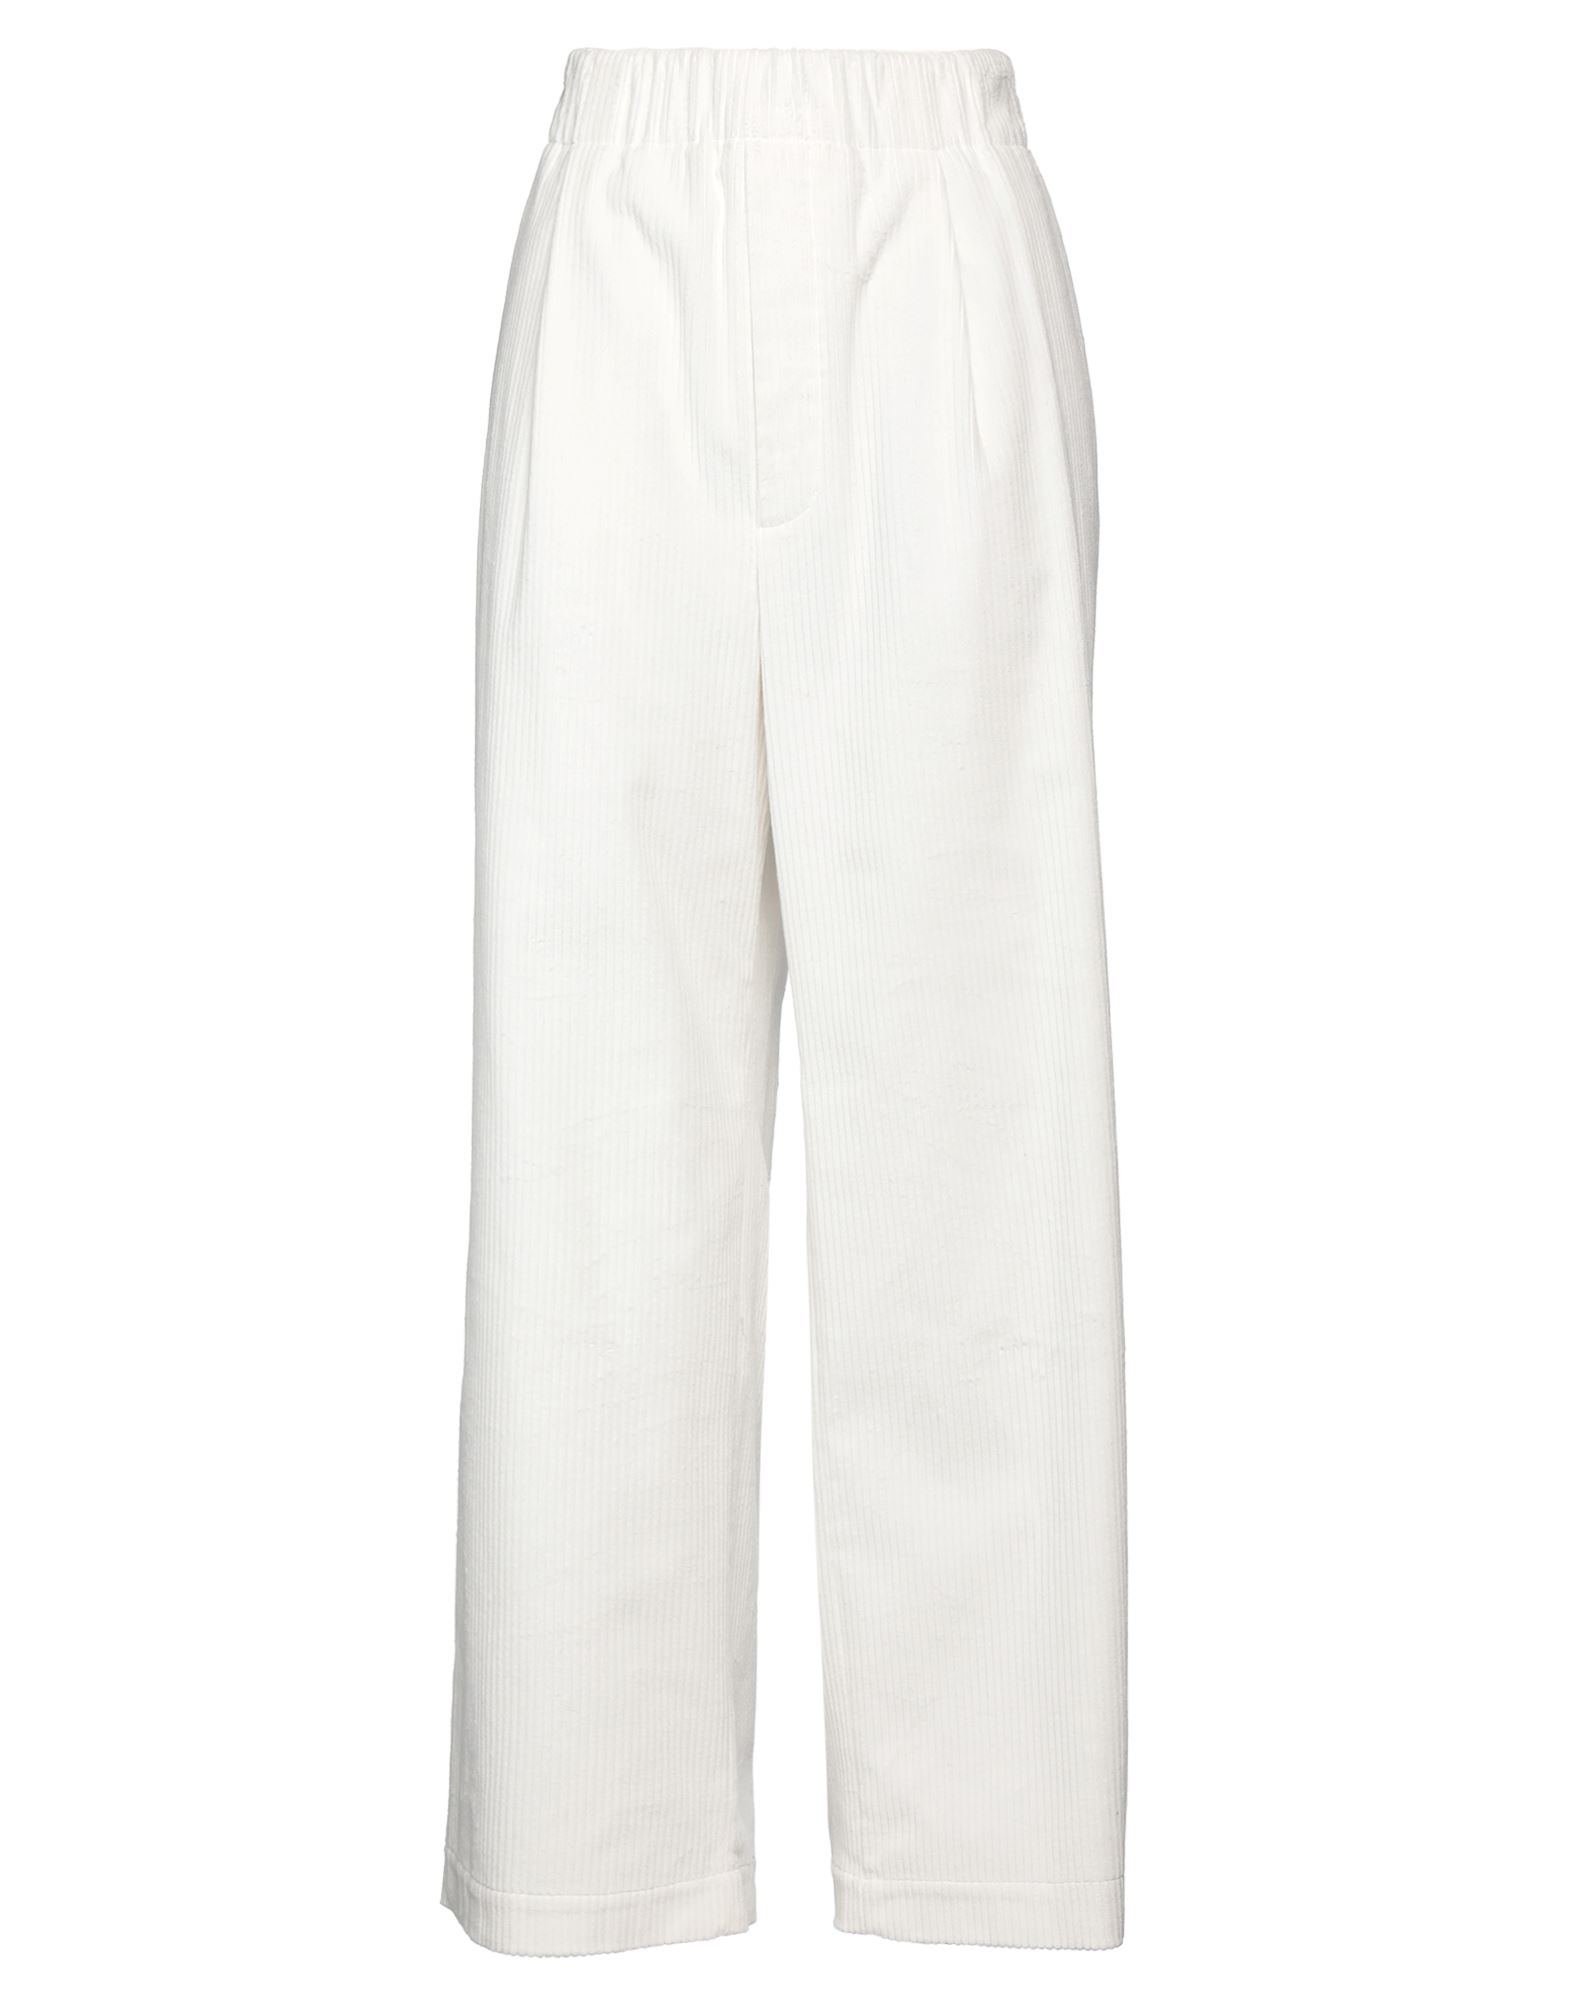 Jejia Woman Pants White Size 6 Cotton